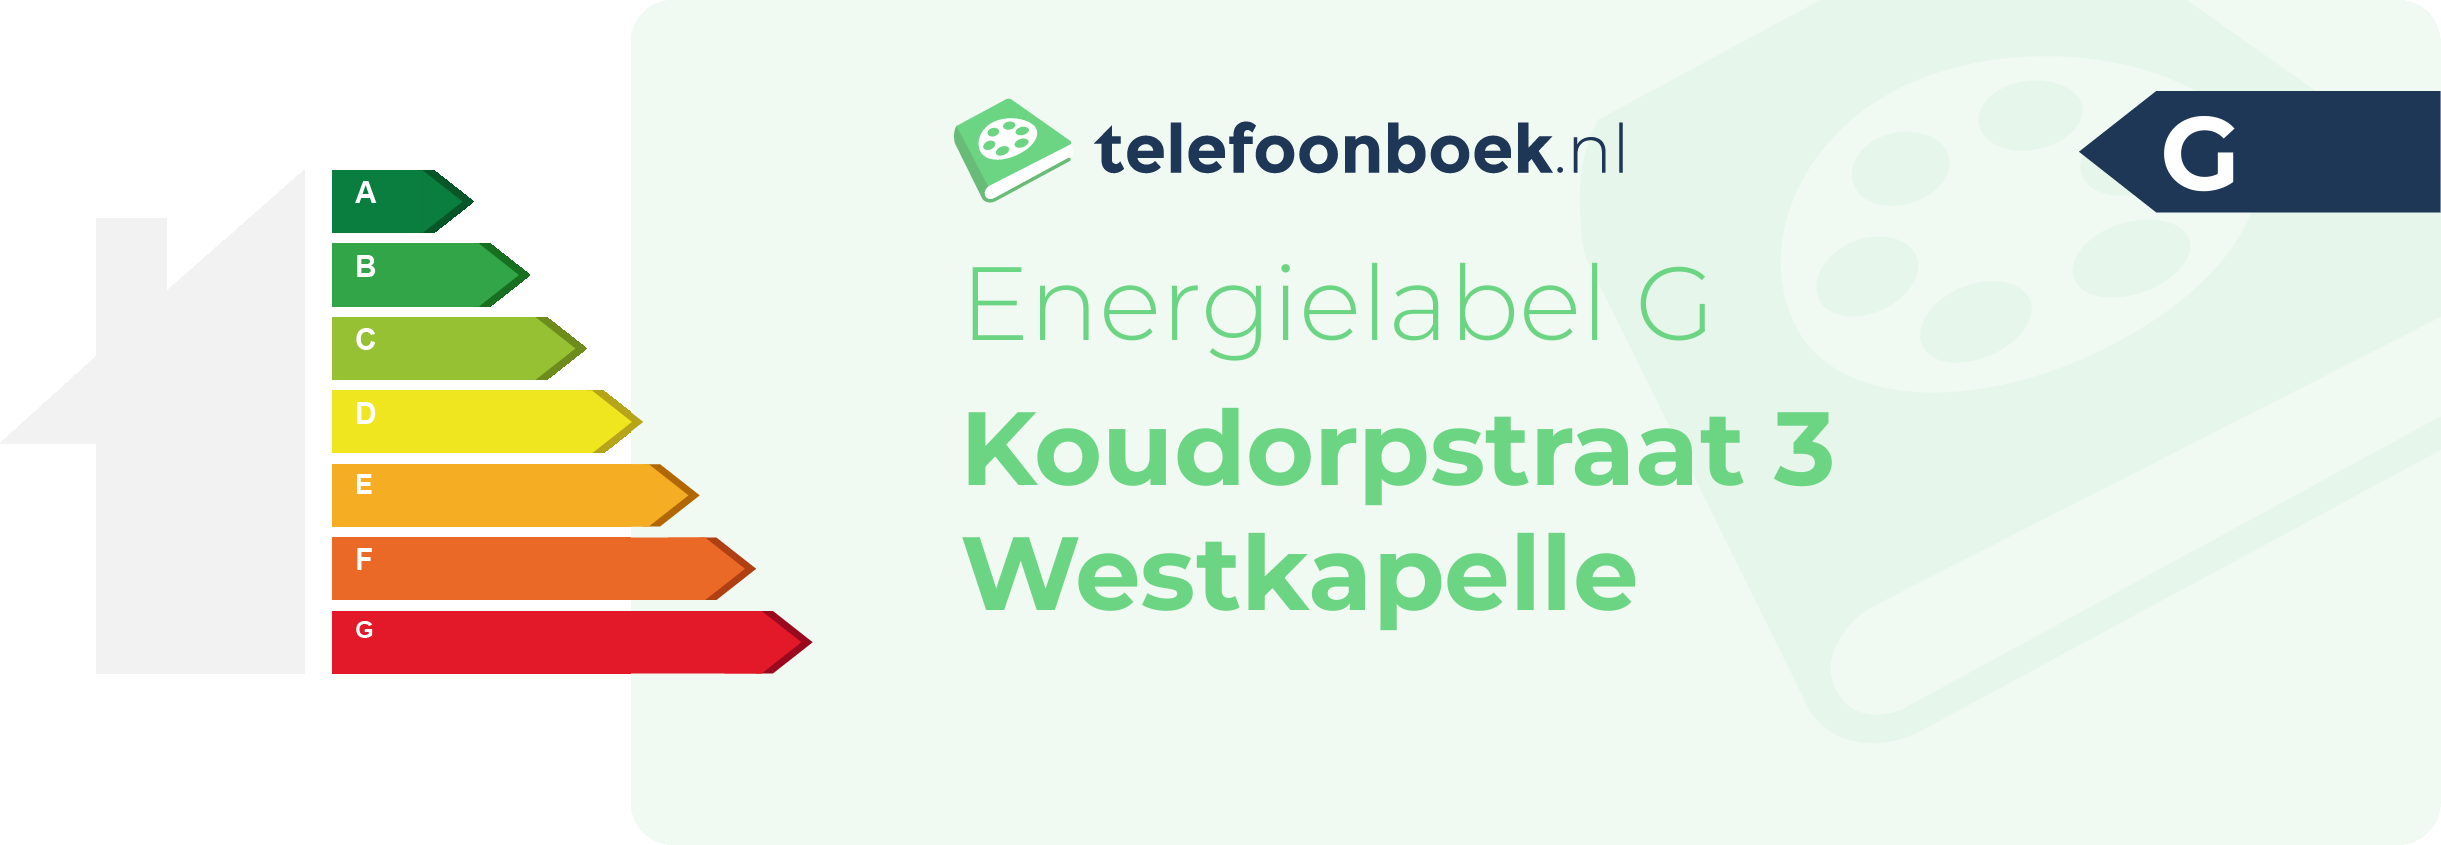 Energielabel Koudorpstraat 3 Westkapelle